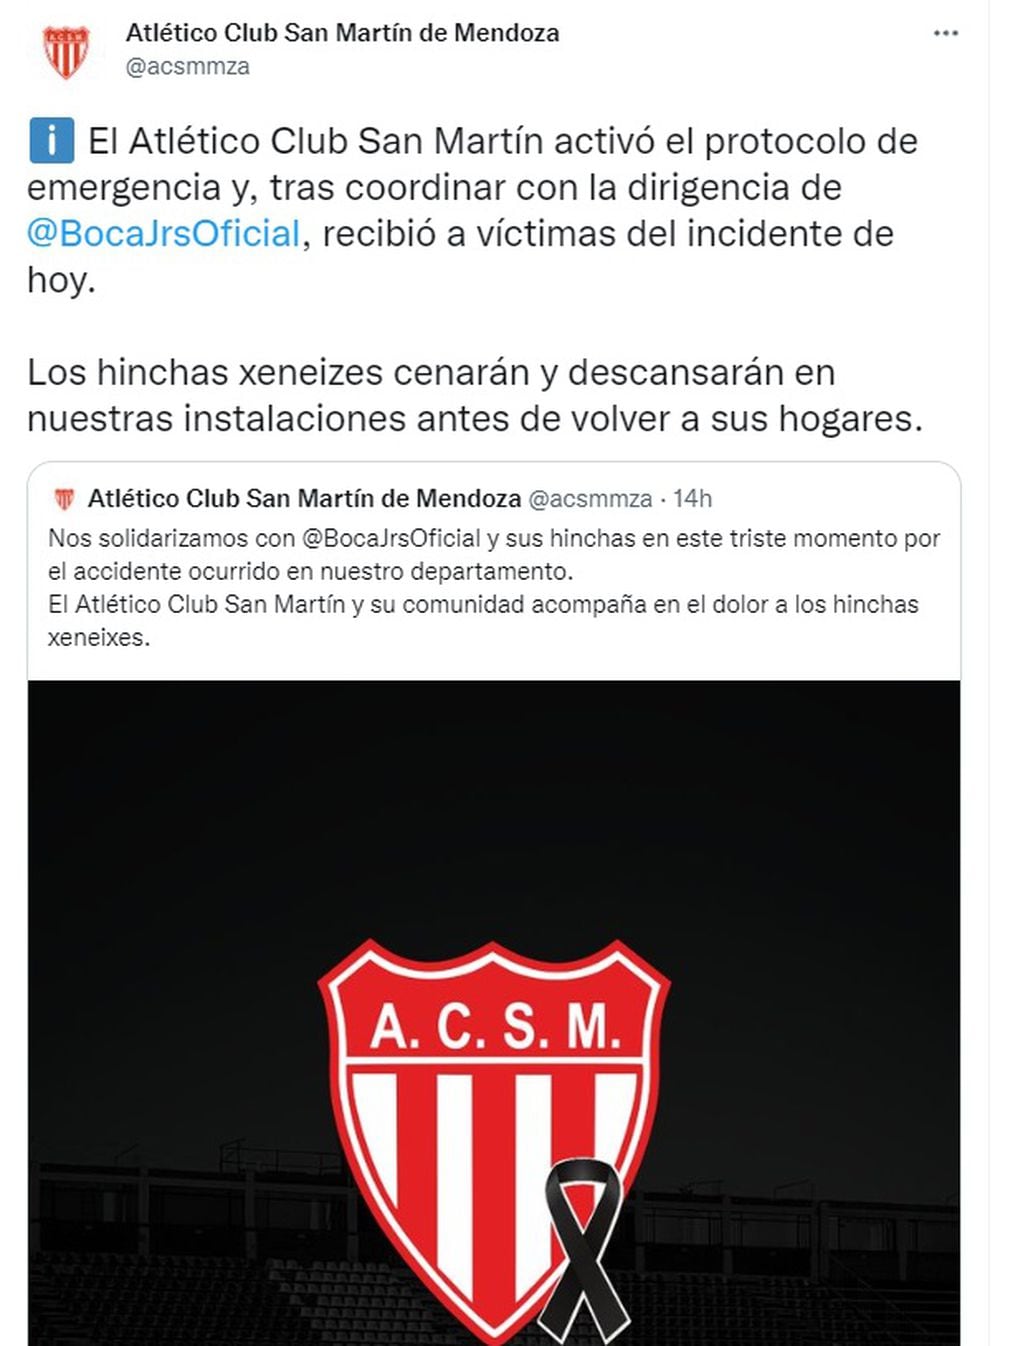 El apoyo del Atlético Club San Martín a los hinchas de Boca tras el vuelco del micro en Mendoza (Twitter)